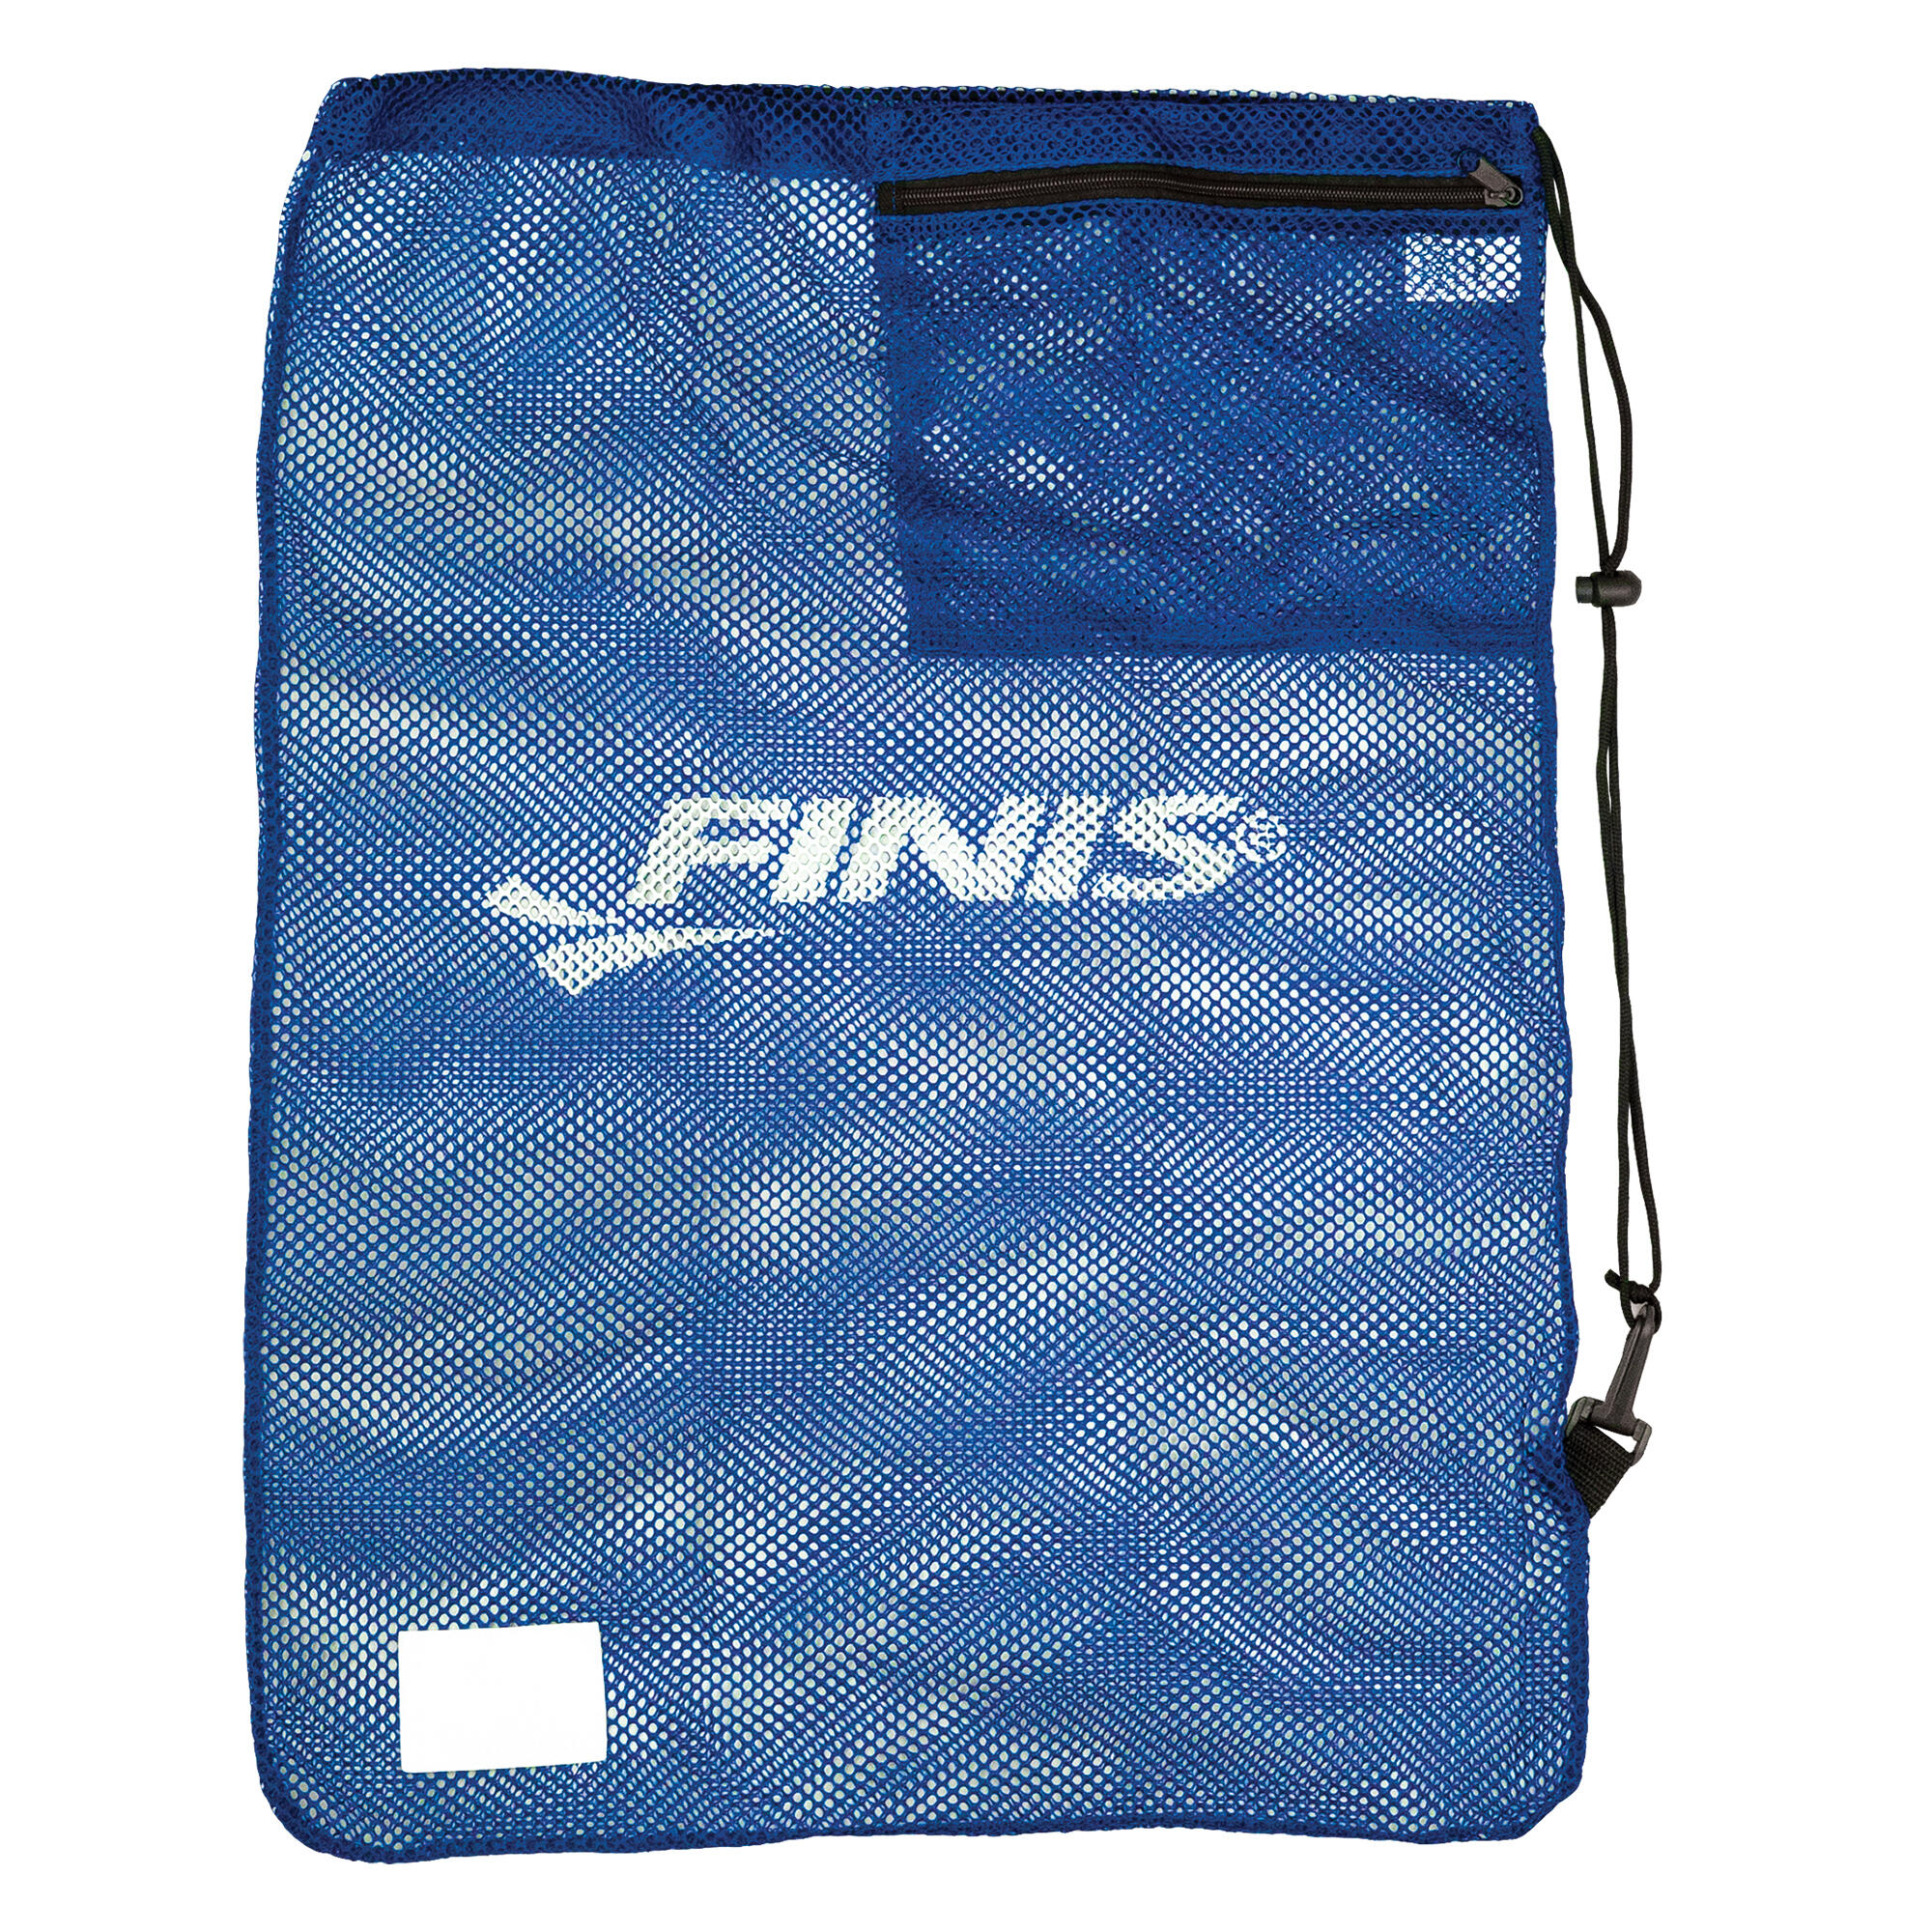 FINIS Finis Mesh Gear Bag - Navy